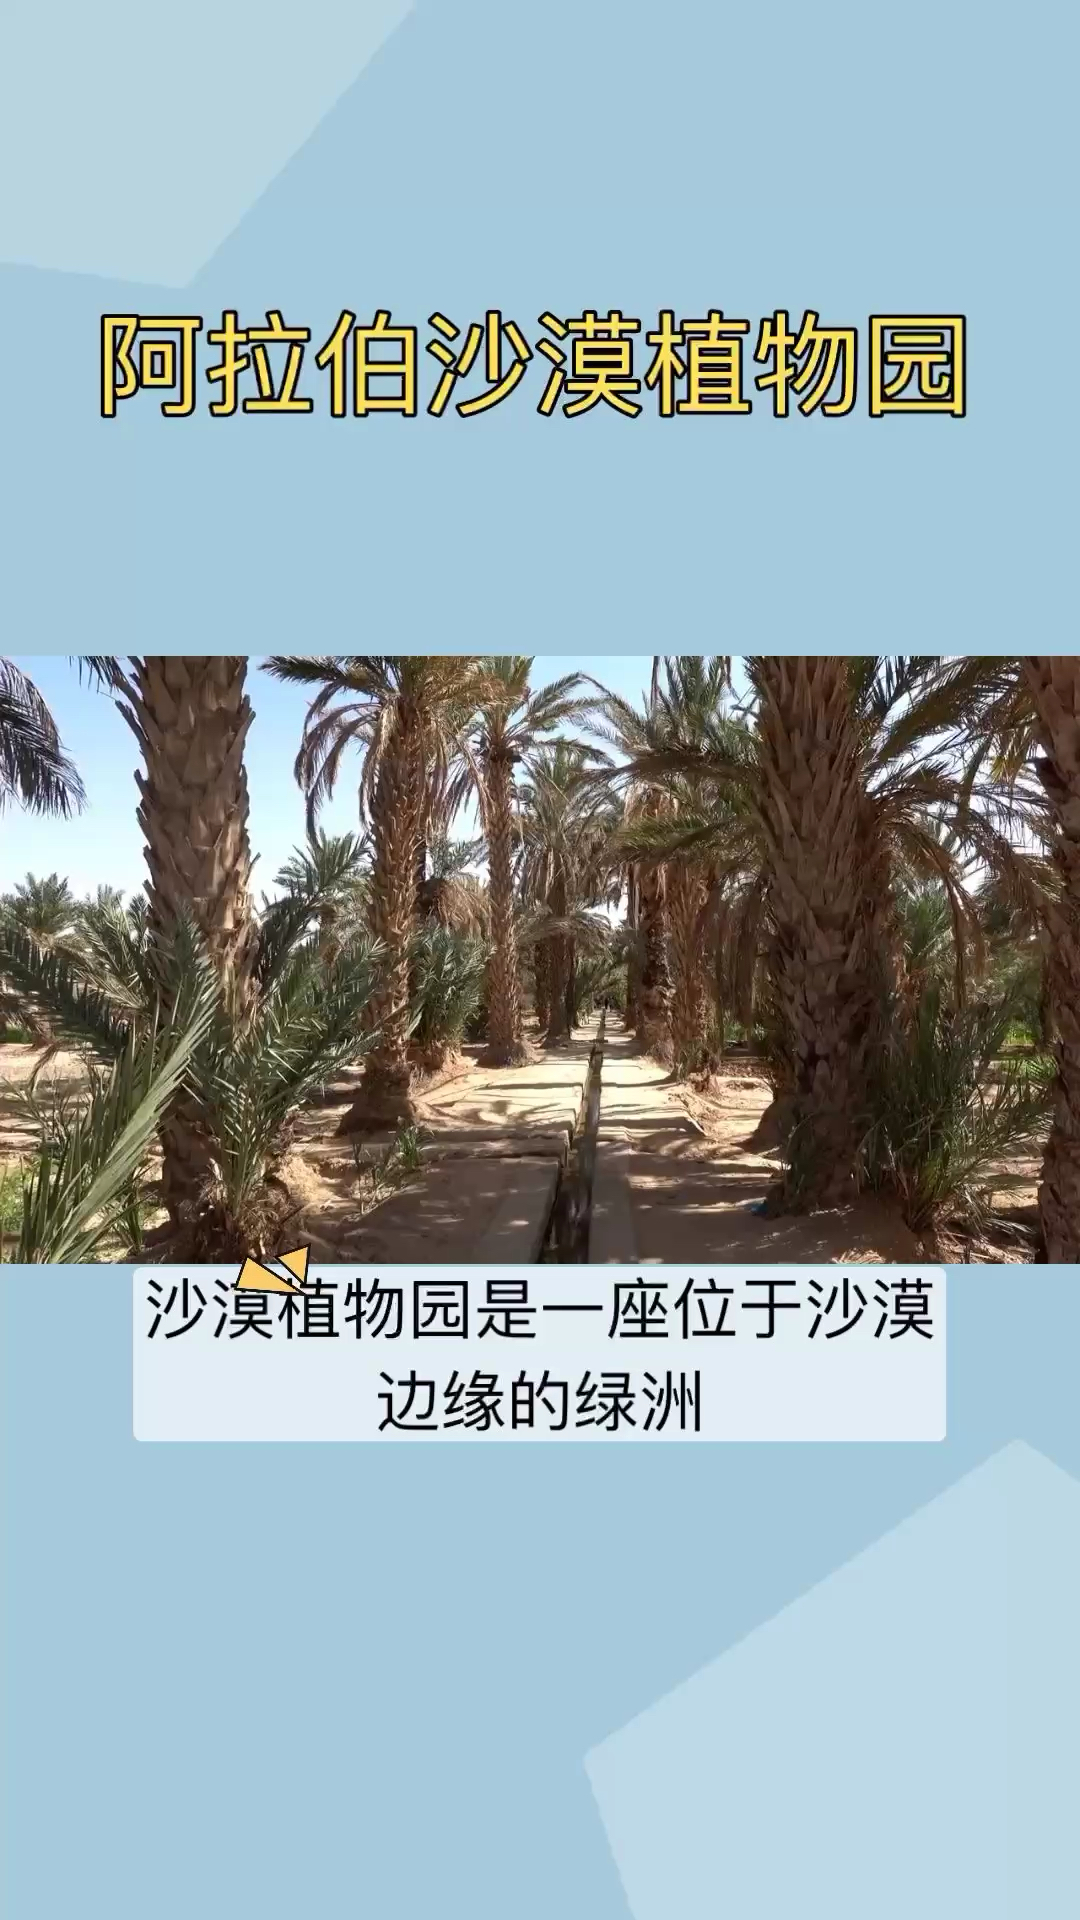 在沙漠植物园内，游客可以欣赏到各种各样的植物和景观